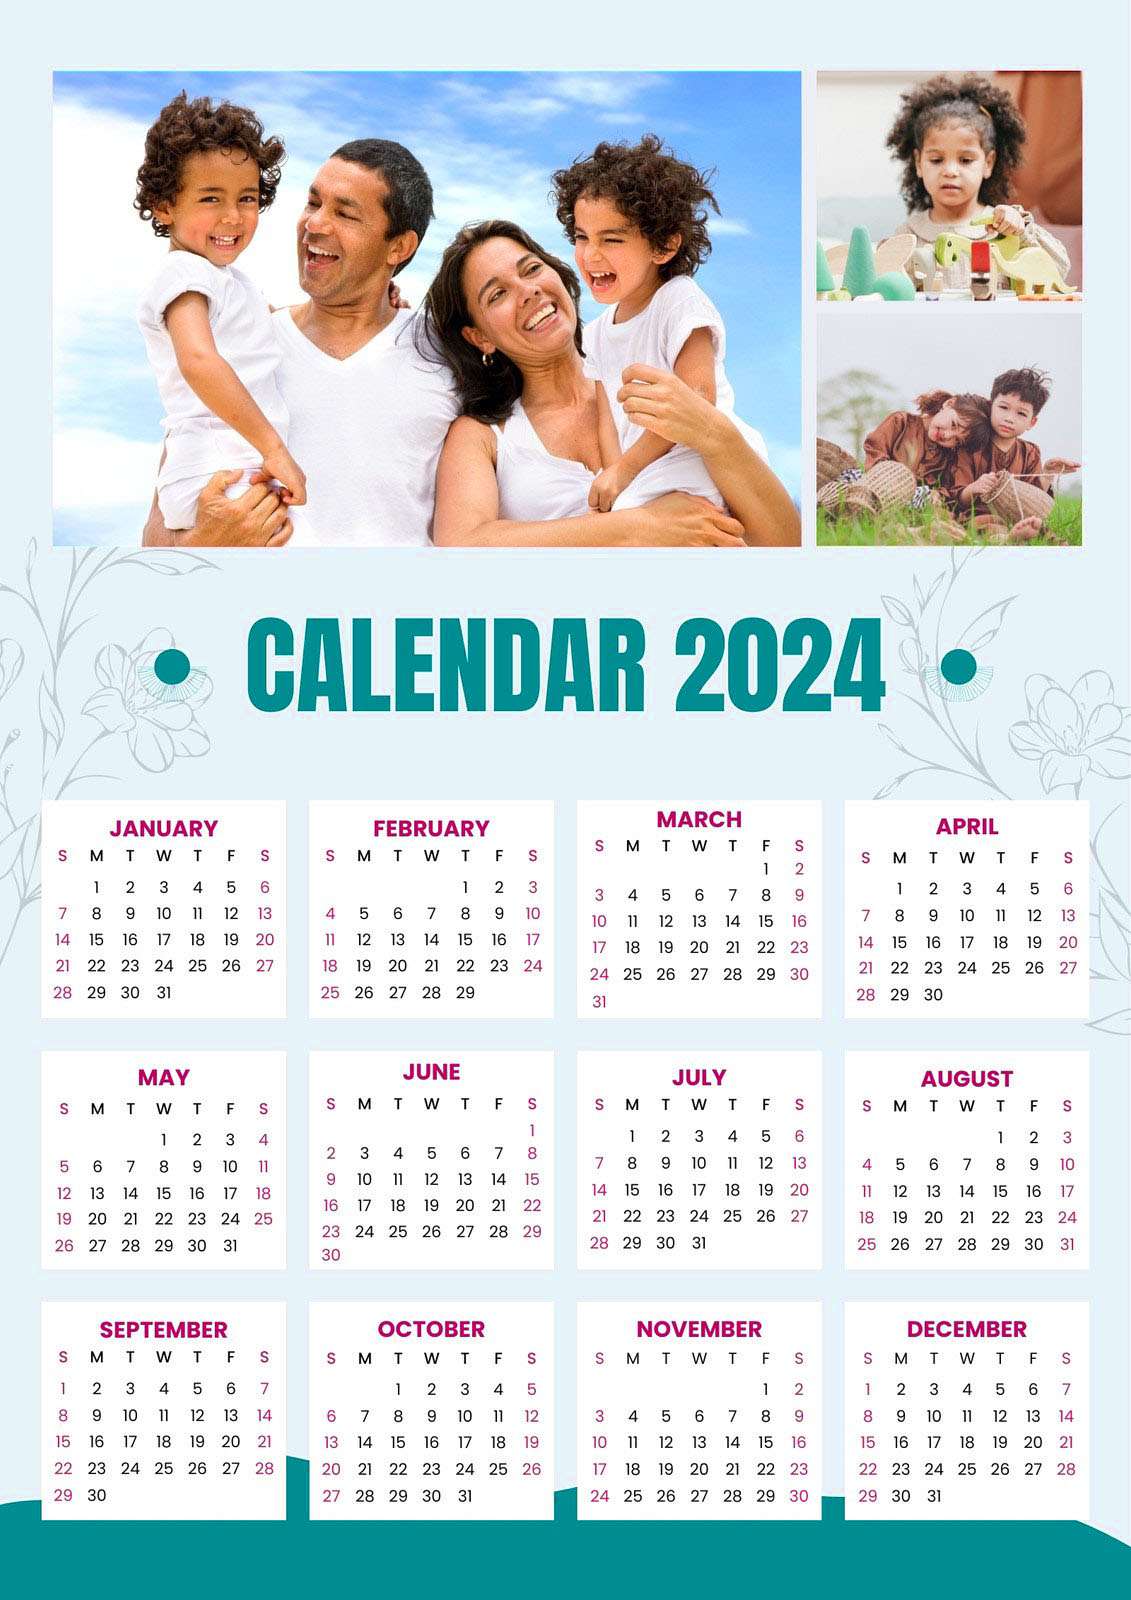 2024 Calendar Planning the Calendar